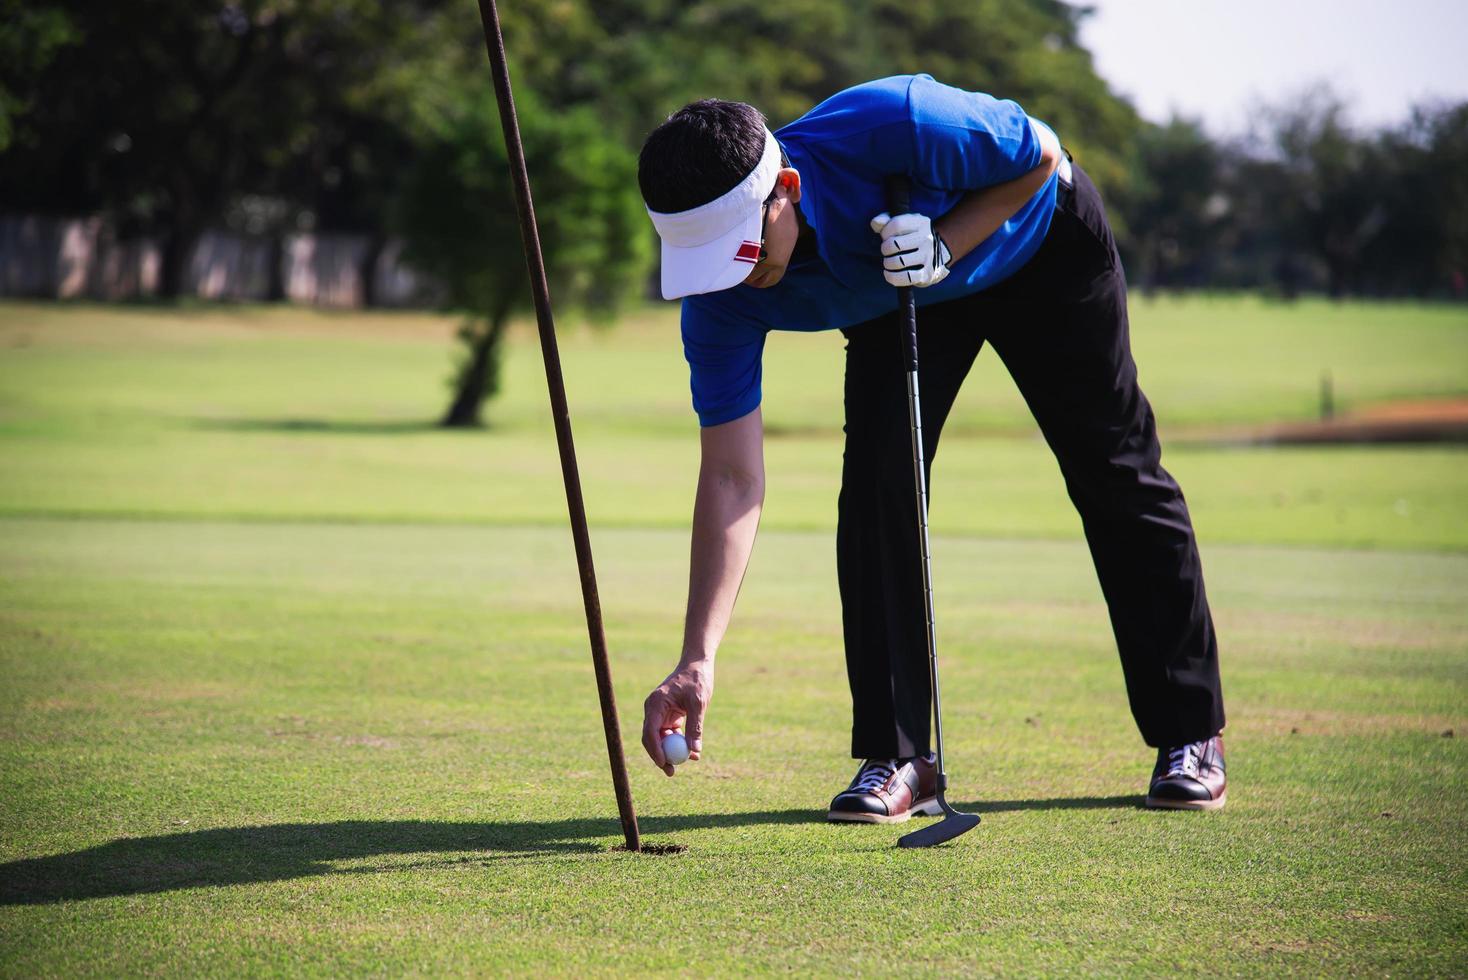 mann spielt golfsport im freien - menschen im golfsportkonzept foto